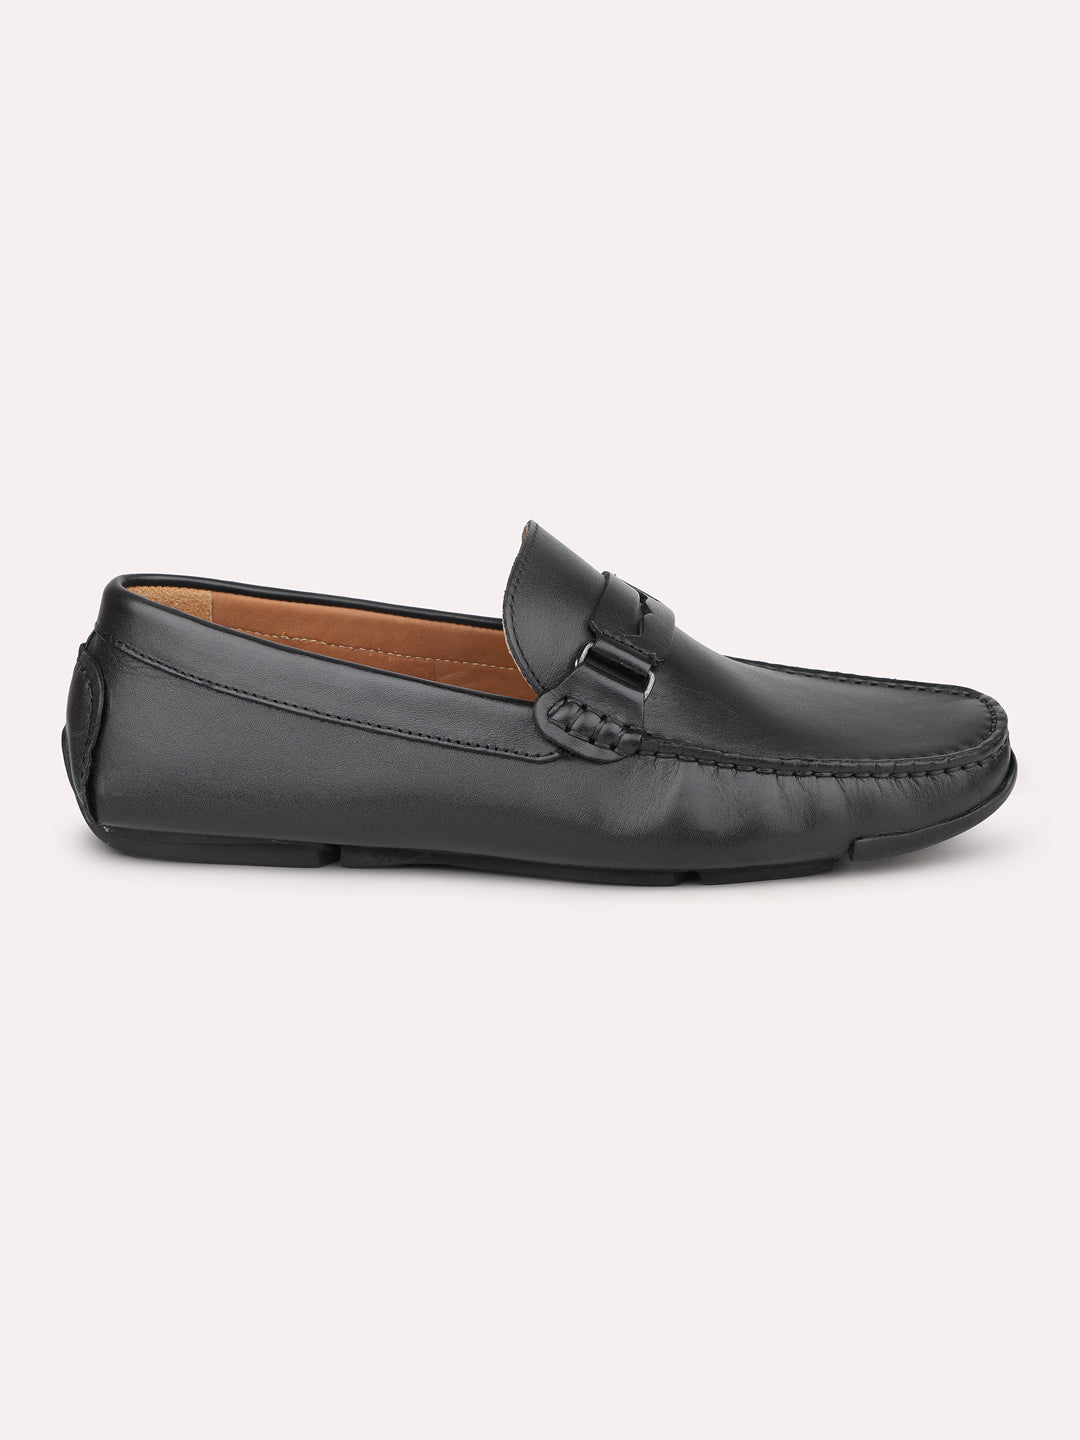 Atesber Black Formal Loafer Shoes For Men